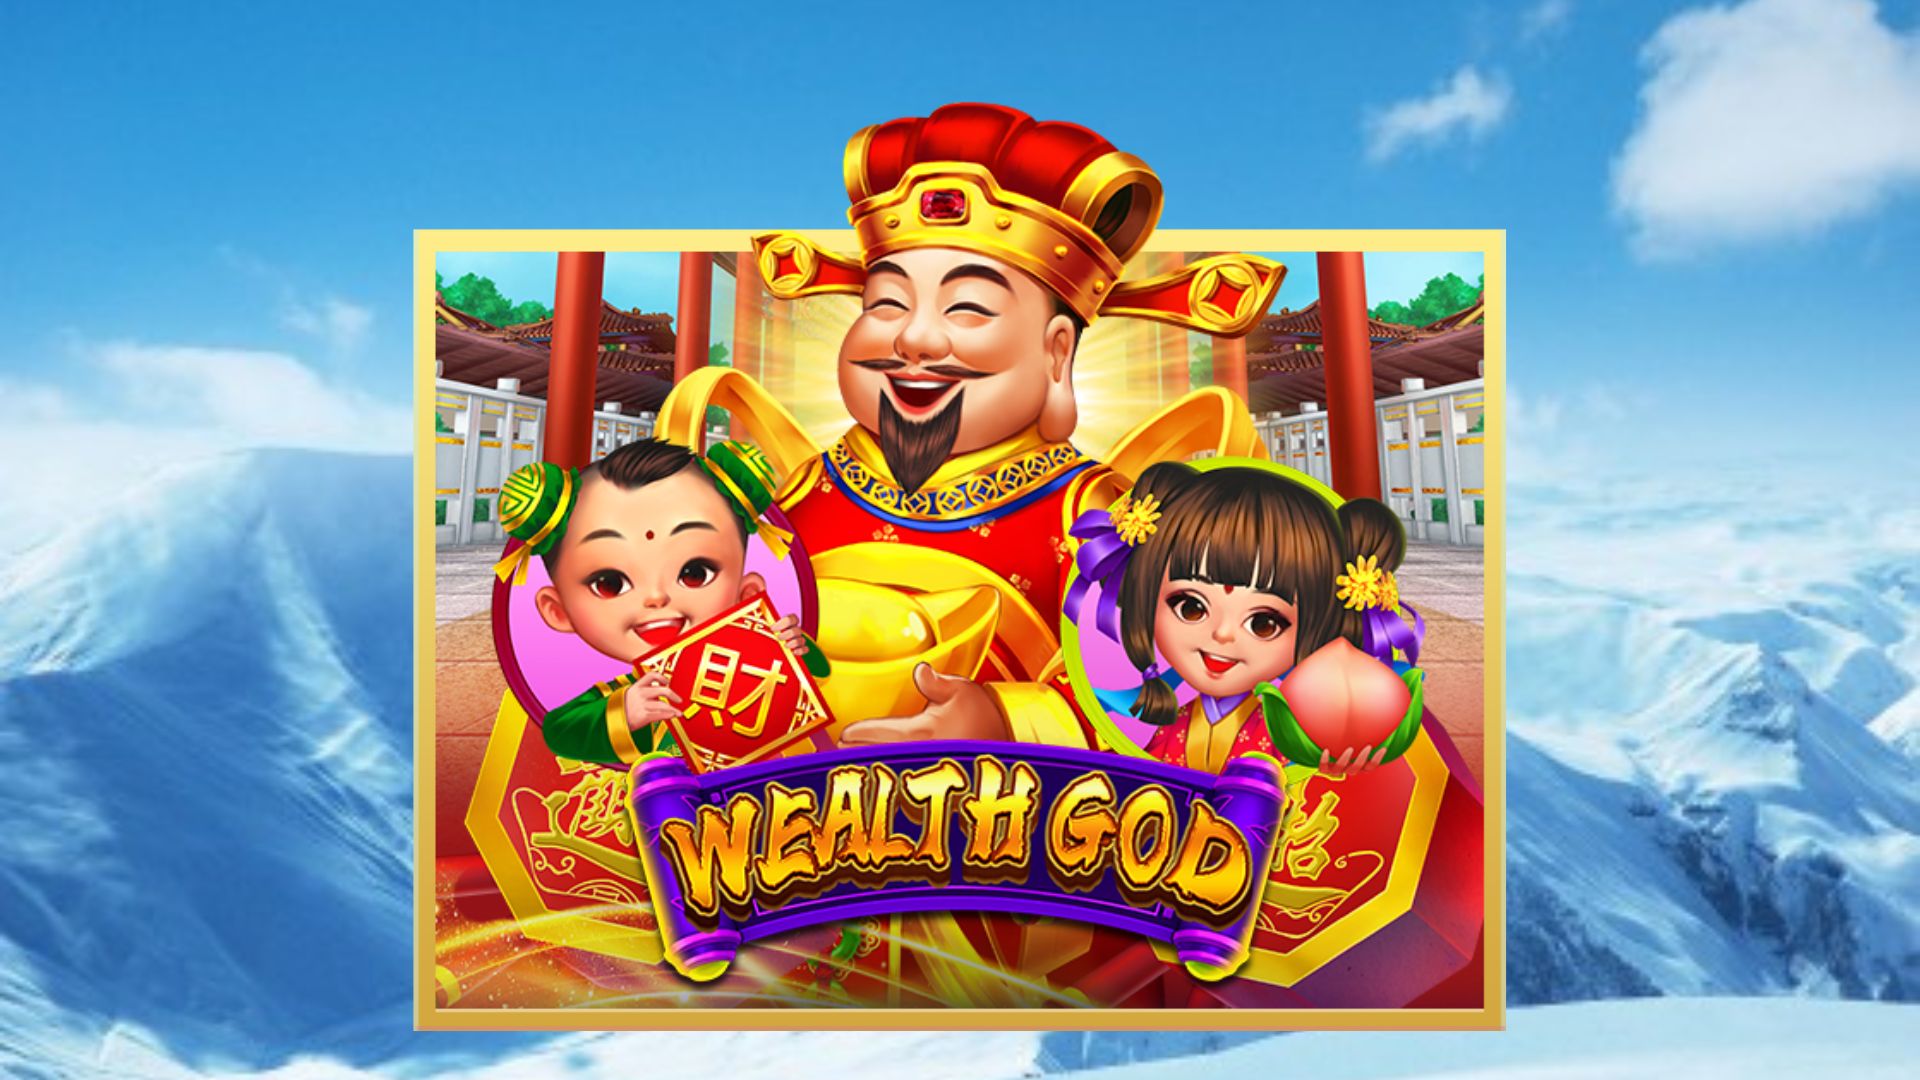 slot online wealth god